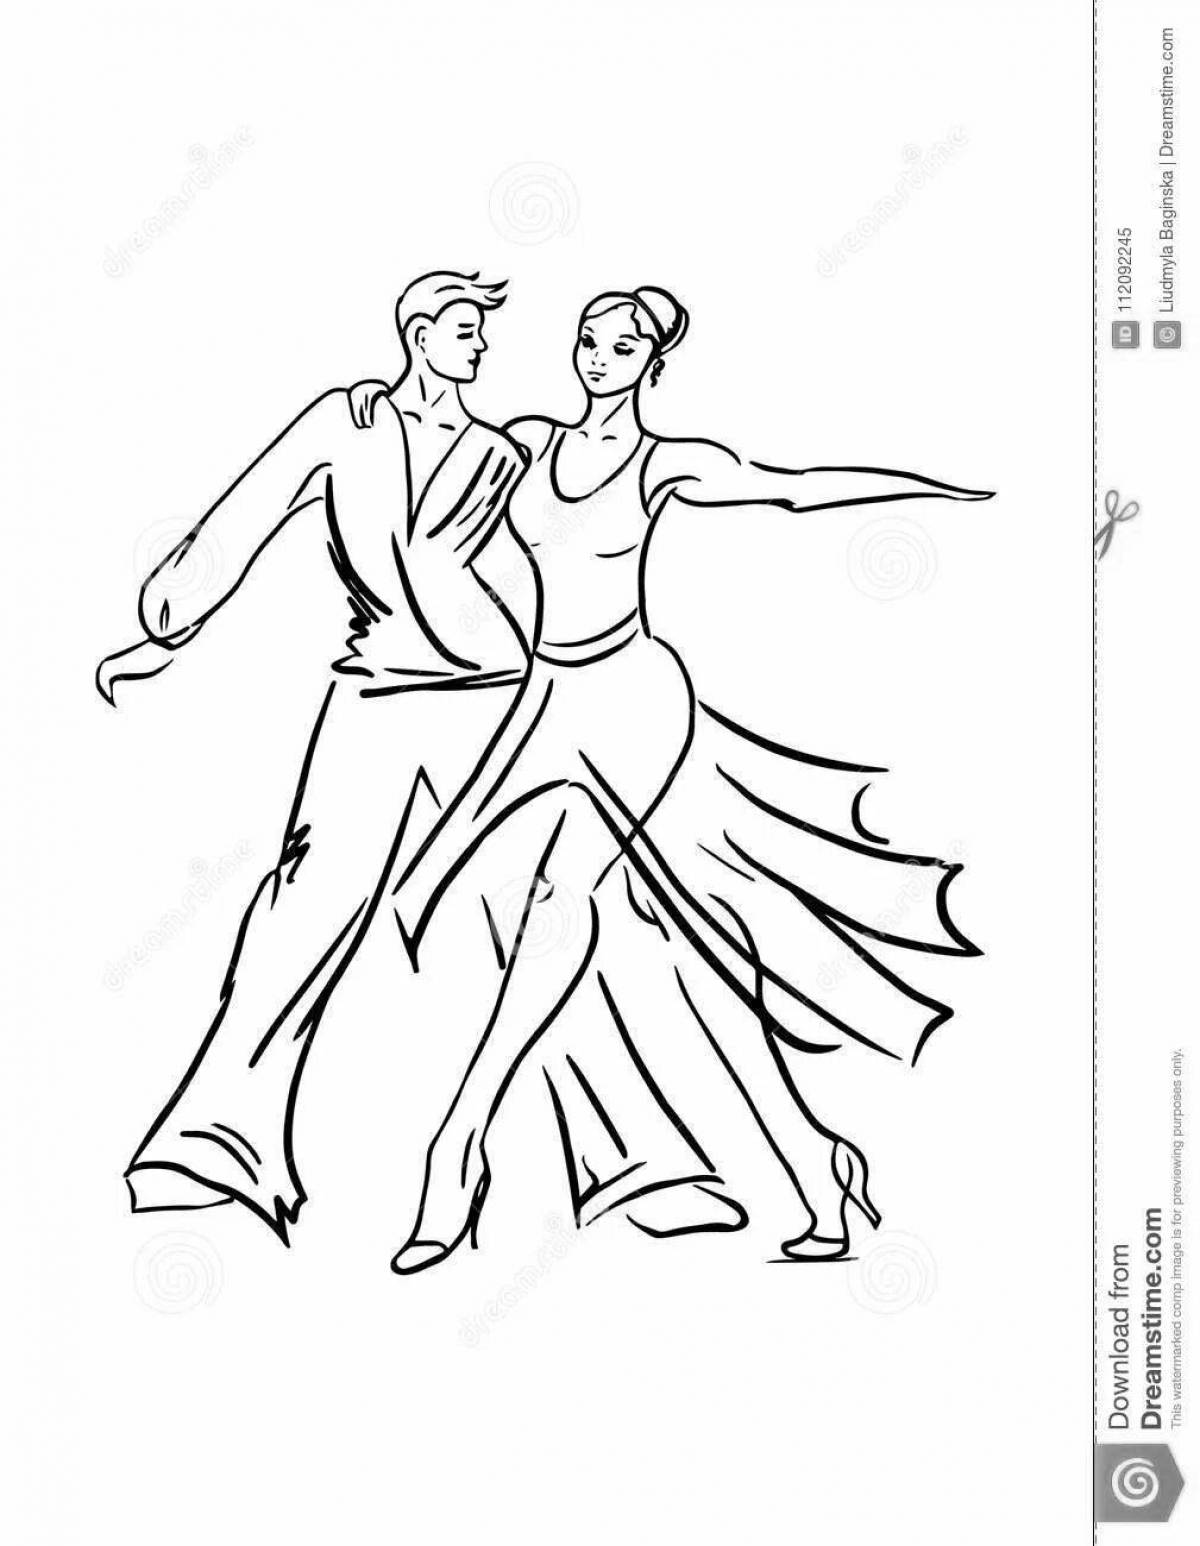 Balanced couples for ballroom dancing